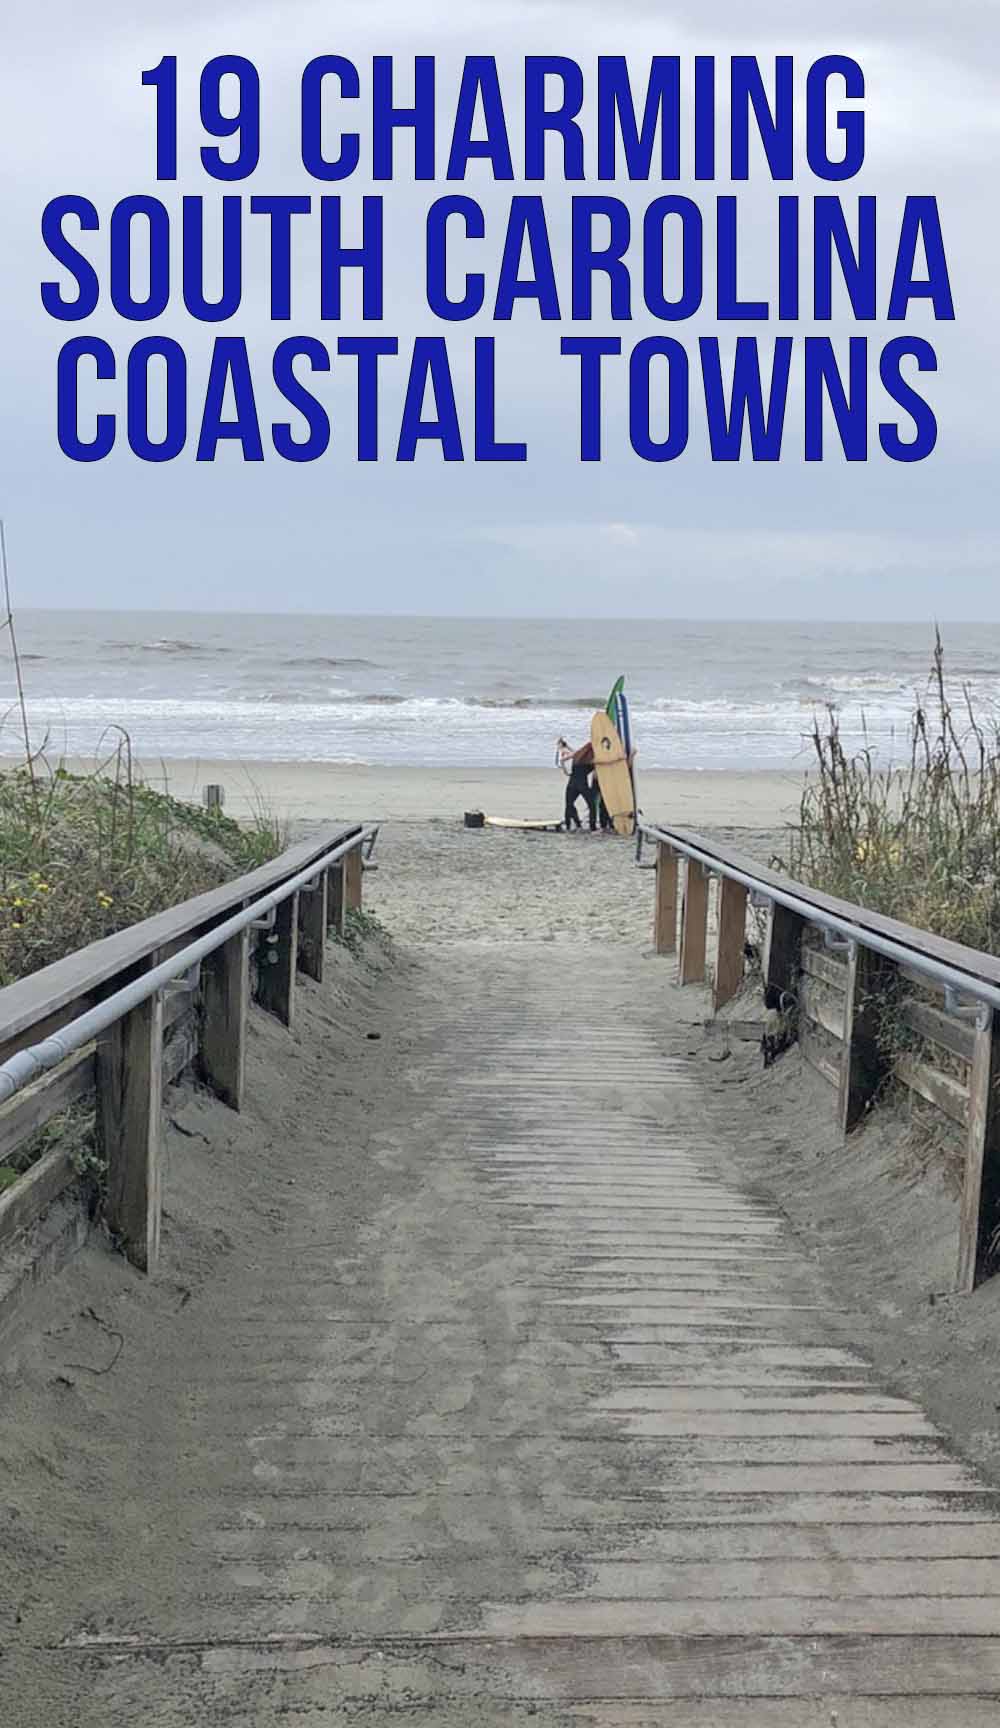 South Carolina Coastal Towns